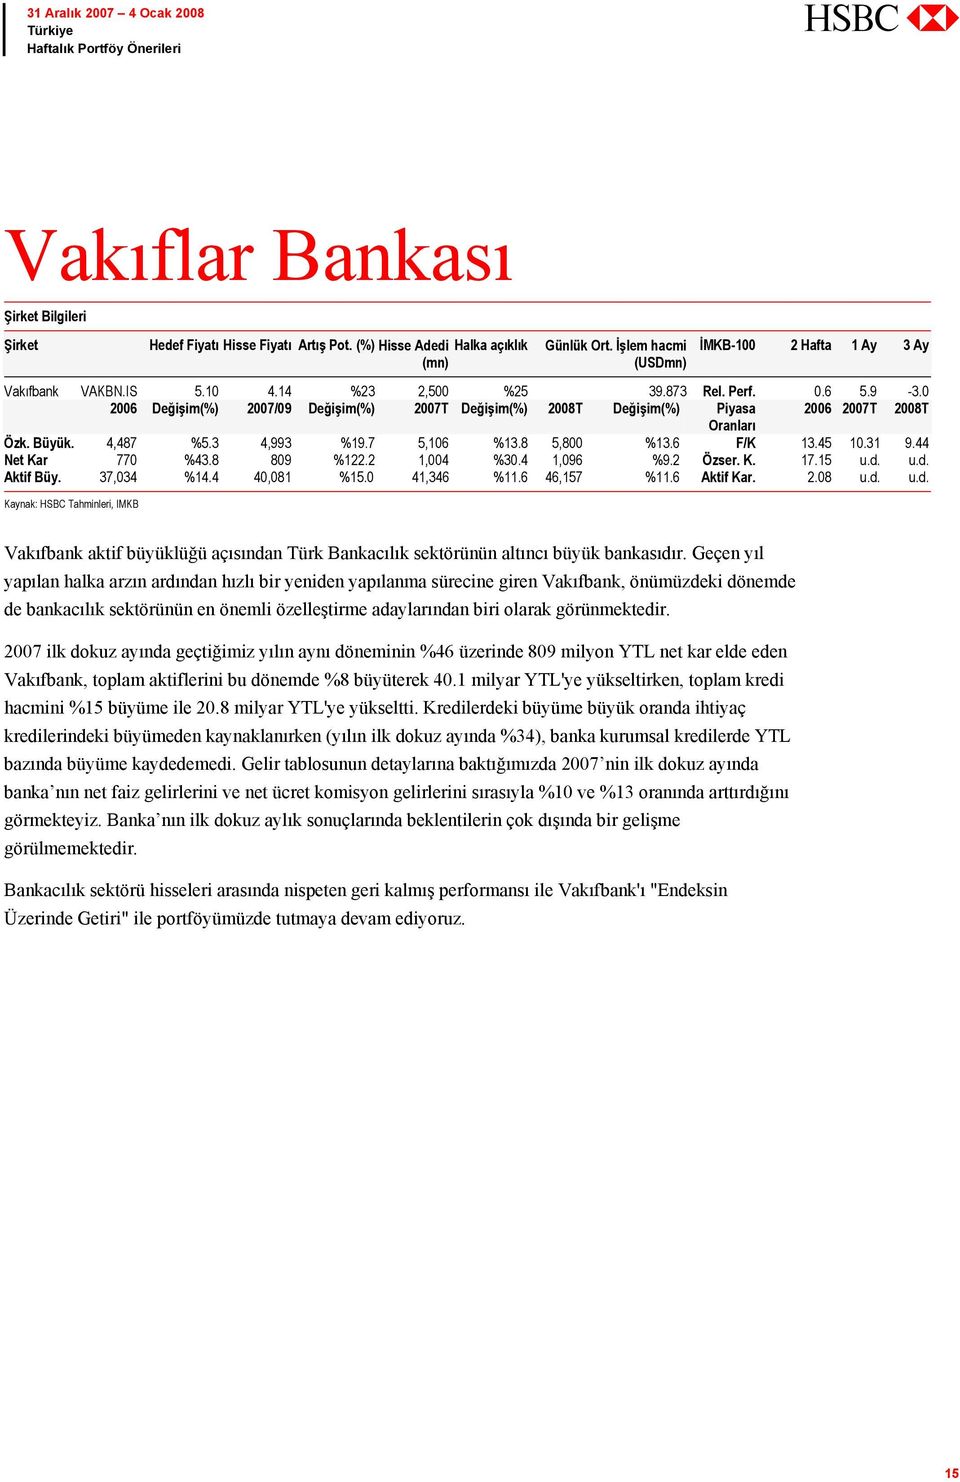 4 40,081 %15.0 41,346 %11.6 46,157 %11.6 Aktif Kar. 2.08 u.d. u.d. Kaynak: HSBC Tahminleri, IMKB Vakıfbank aktif büyüklüğü açısından Türk Bankacılık sektörünün altıncı büyük bankasıdır.